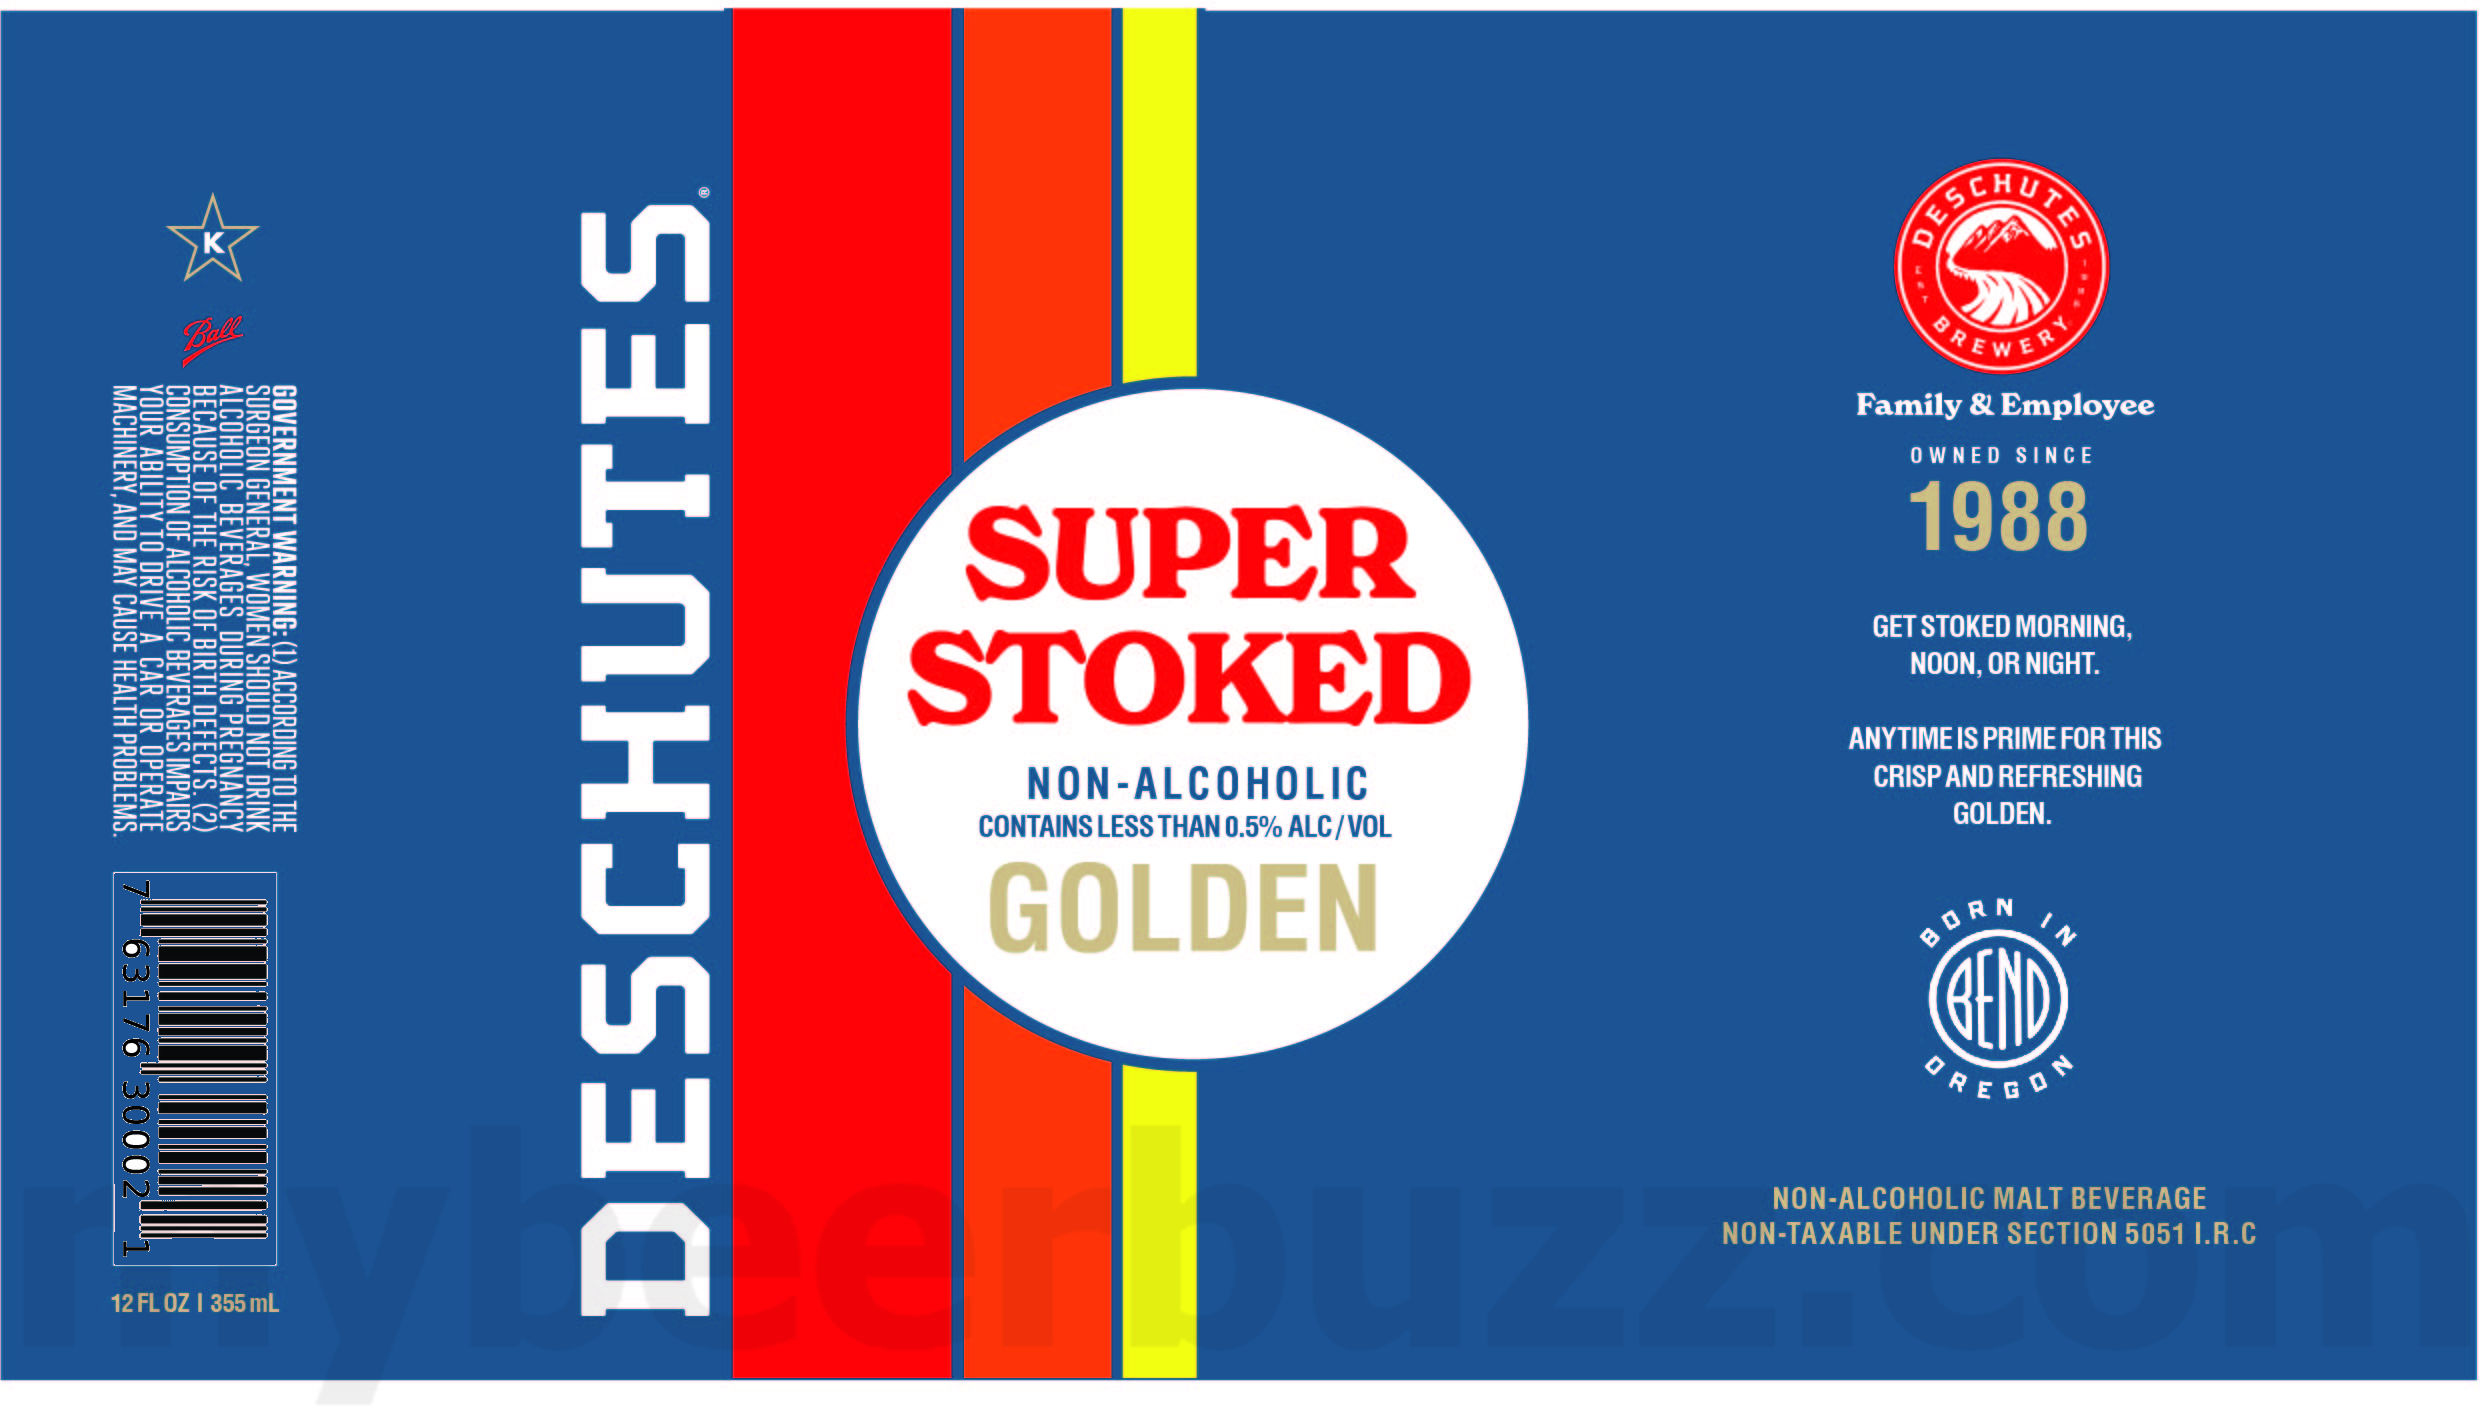 Deschutes Adding Super Stoked Non-Alcoholic Golden Ale